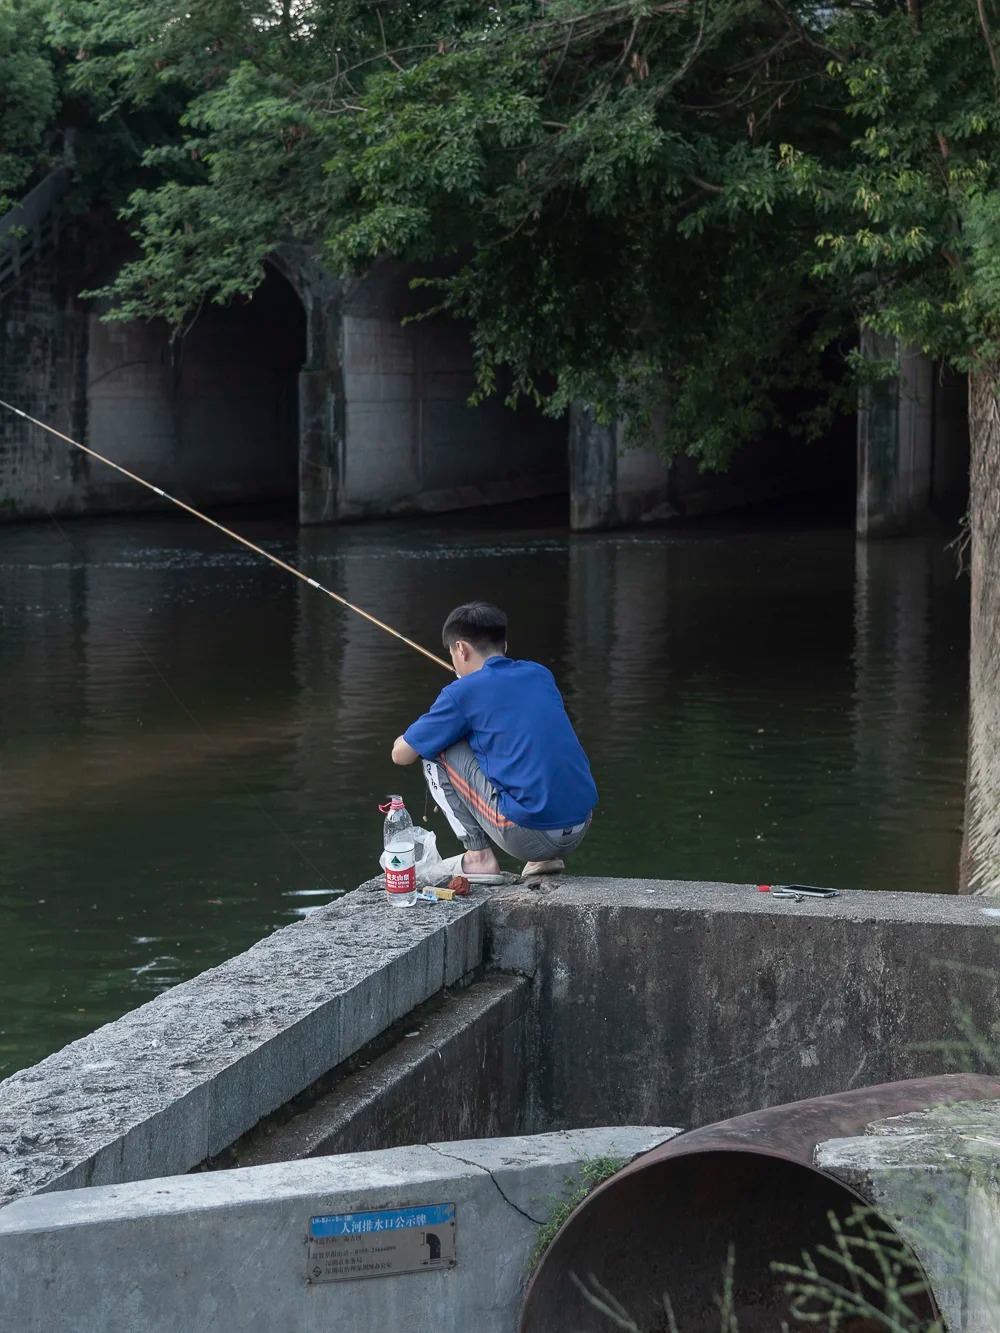 布吉河吸引許多人釣魚。小紅書